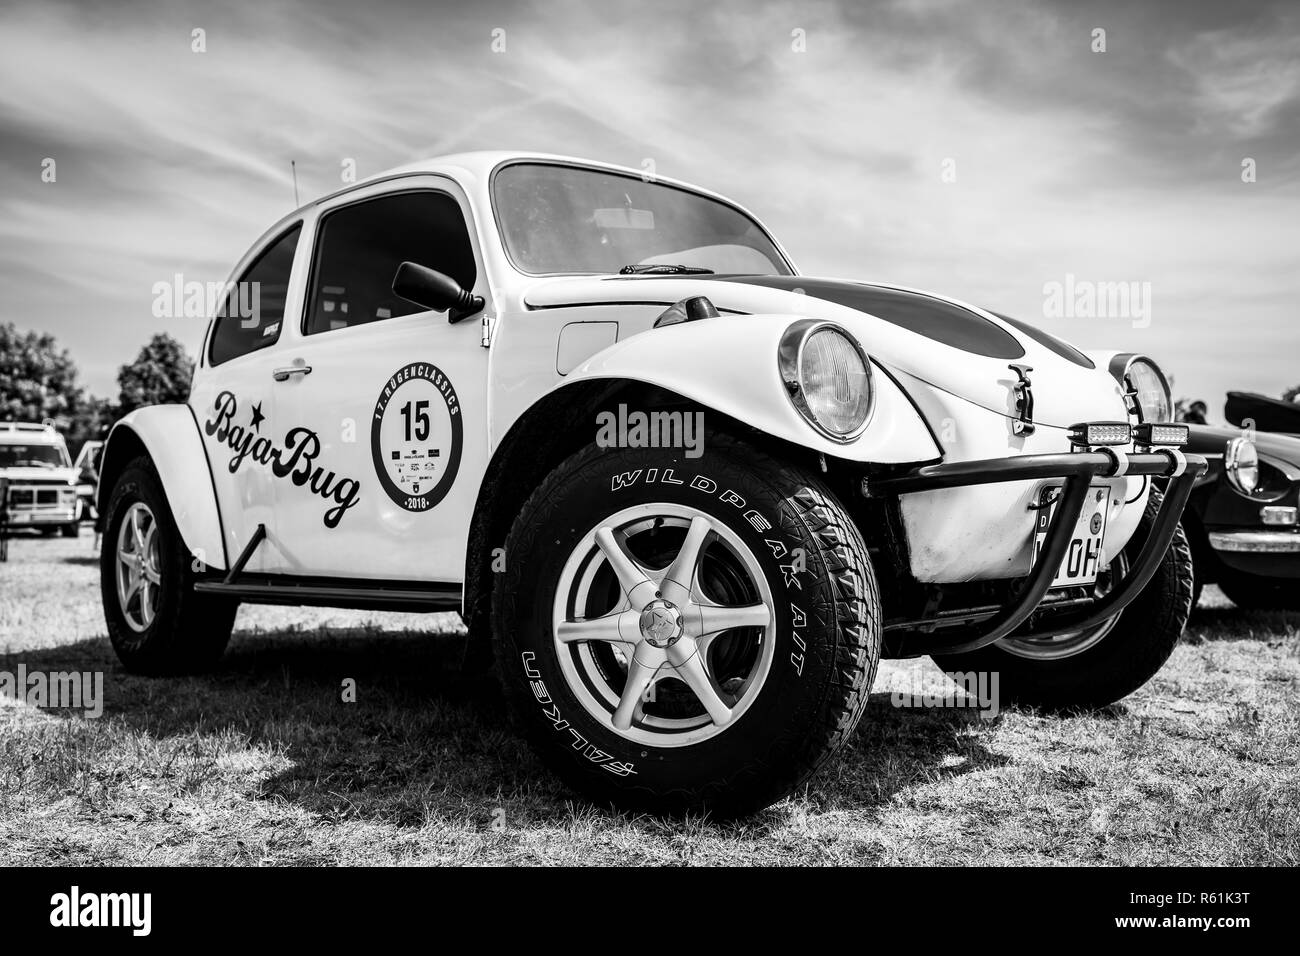 PAAREN IM GLIEN, ALLEMAGNE - le 19 mai 2018 : Un Baja Bug est un original Volkswagen modifié pour fonctionner hors-route. Noir et blanc. Exposition 'Die Ol Banque D'Images